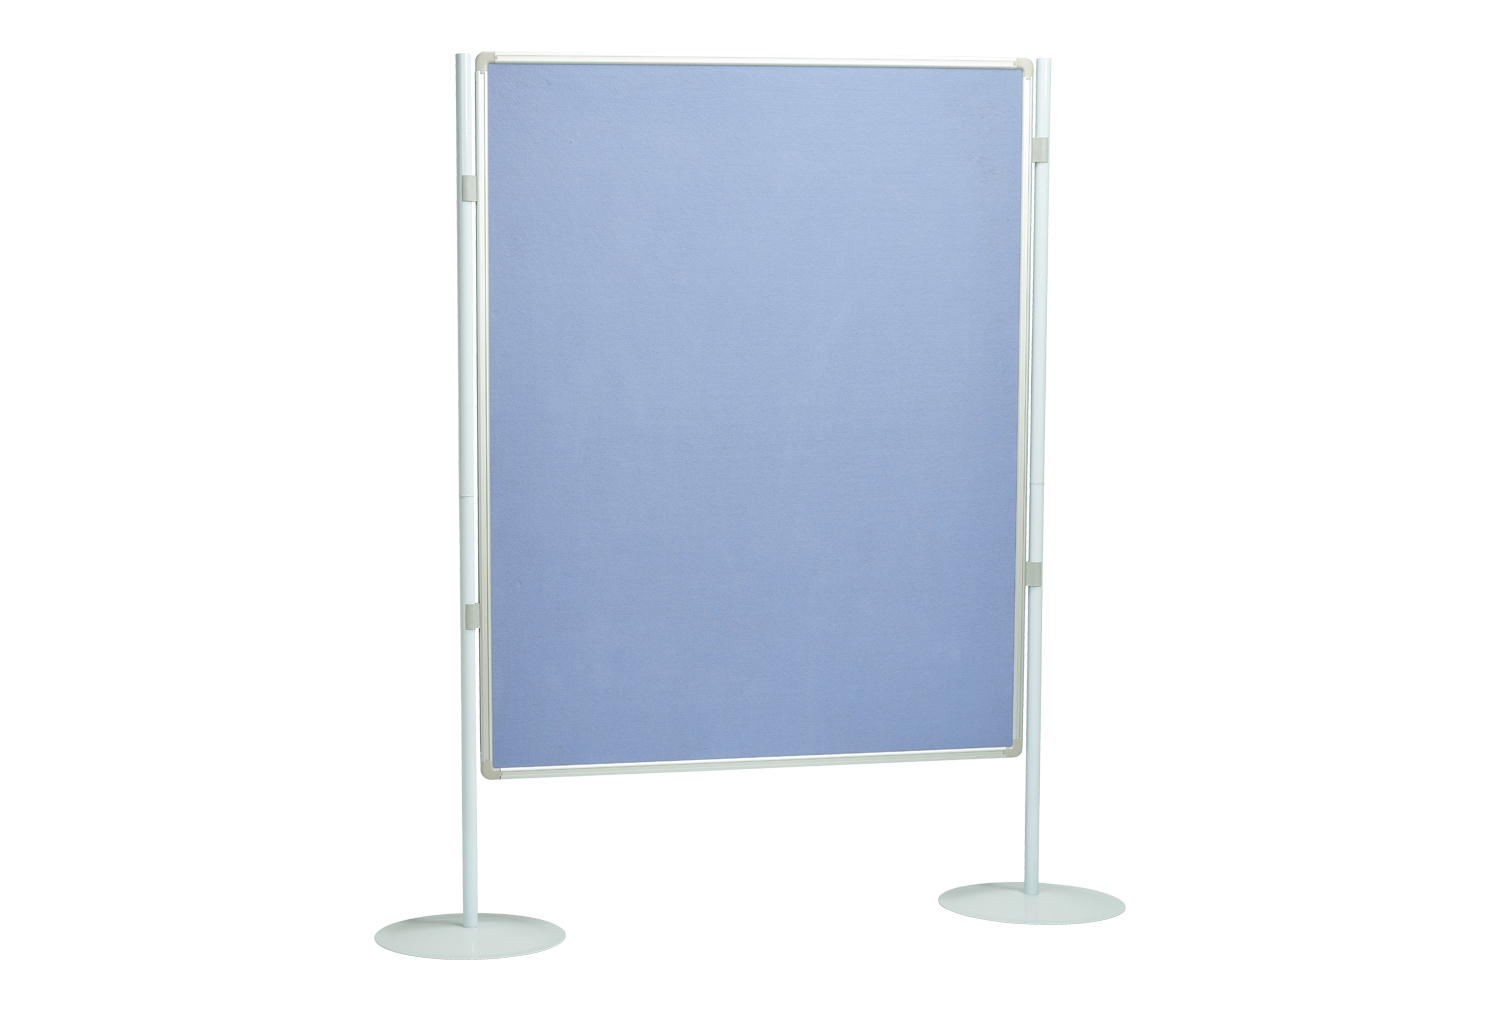 Xib-It Pole And Panel Pin Board, Blue